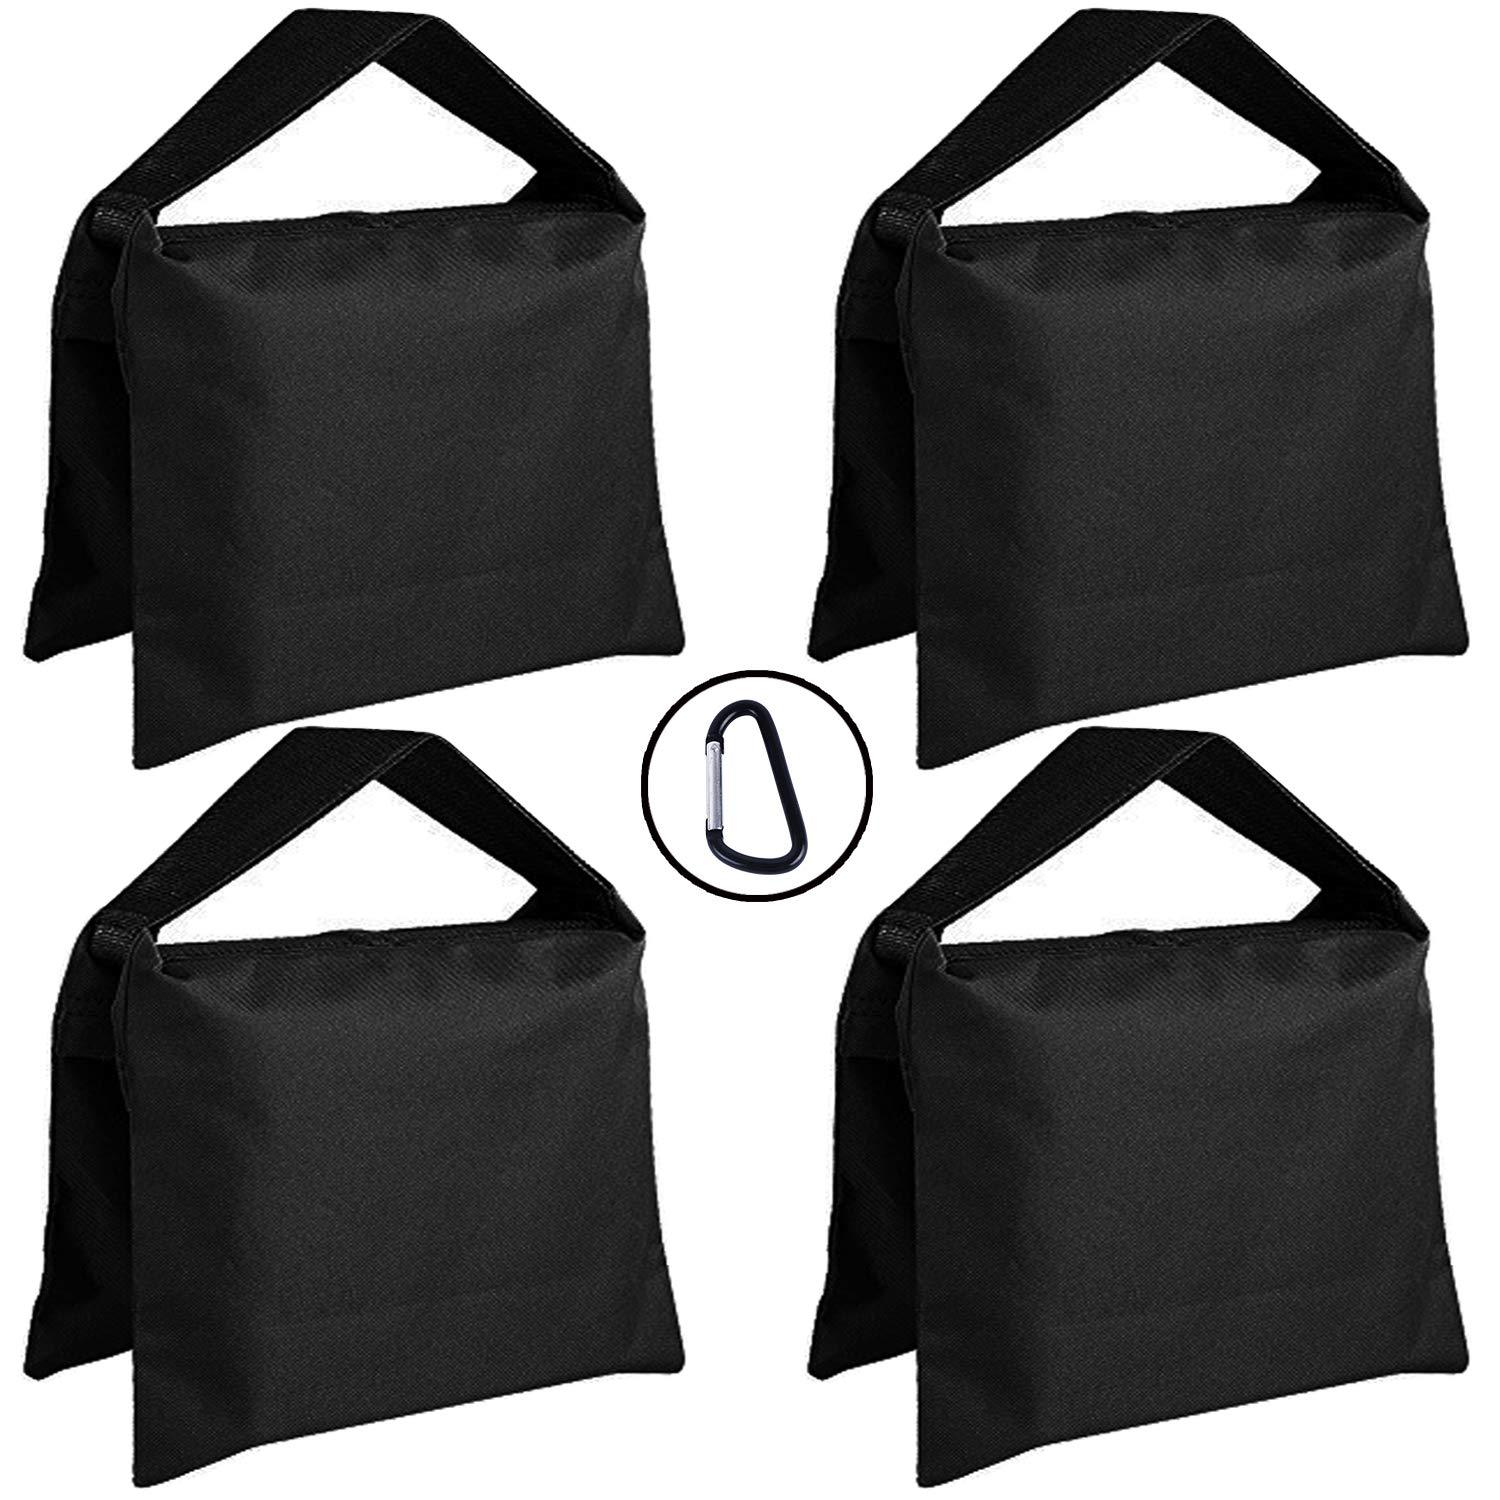 Super Heavy Duty ABCCANOPY Sandbag Saddlebag Design 4 Weight Bags abccanopy.com